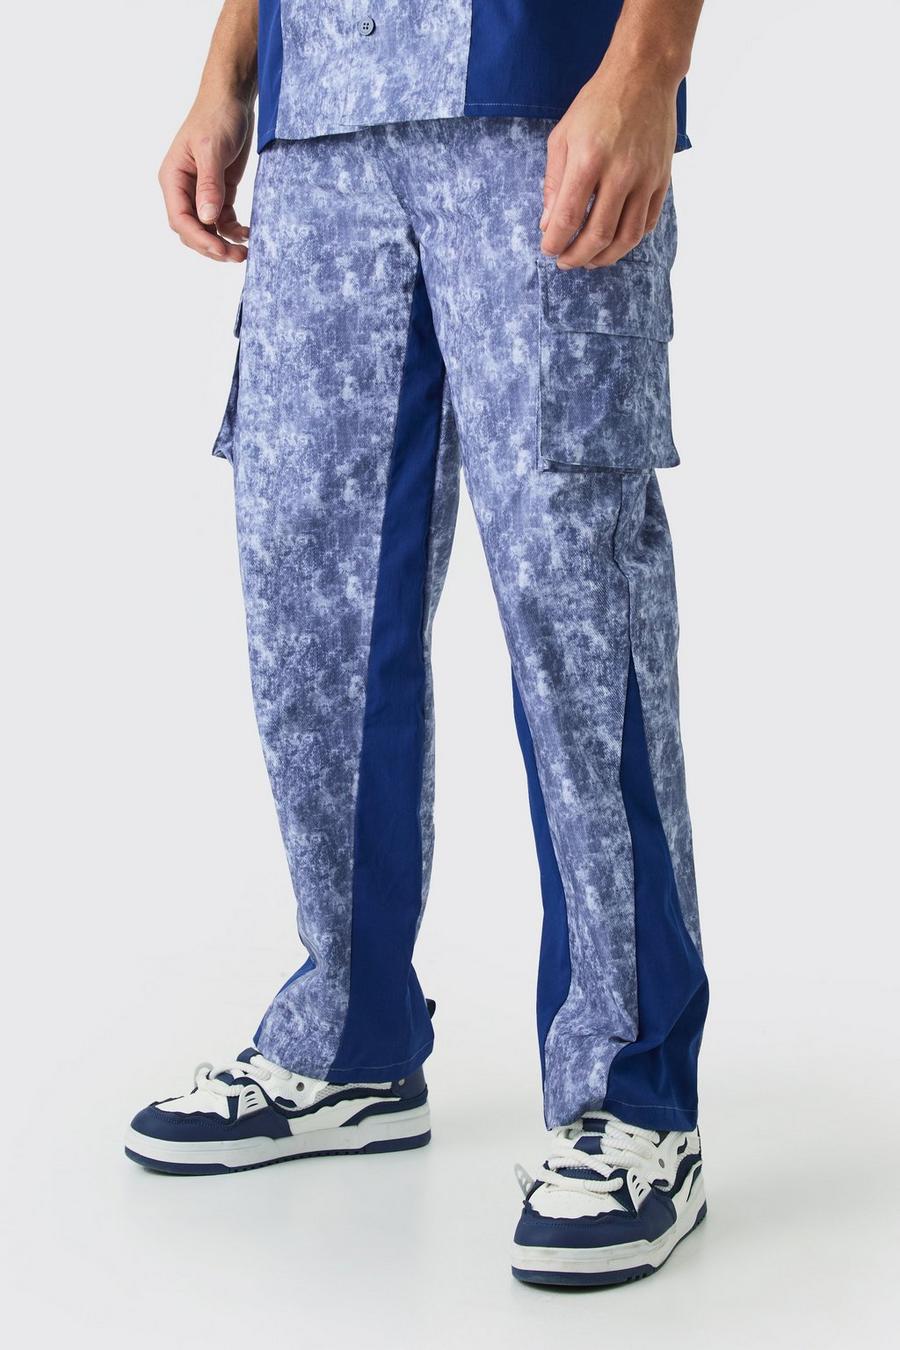 Lockere Camouflage Hose, Denim-blue